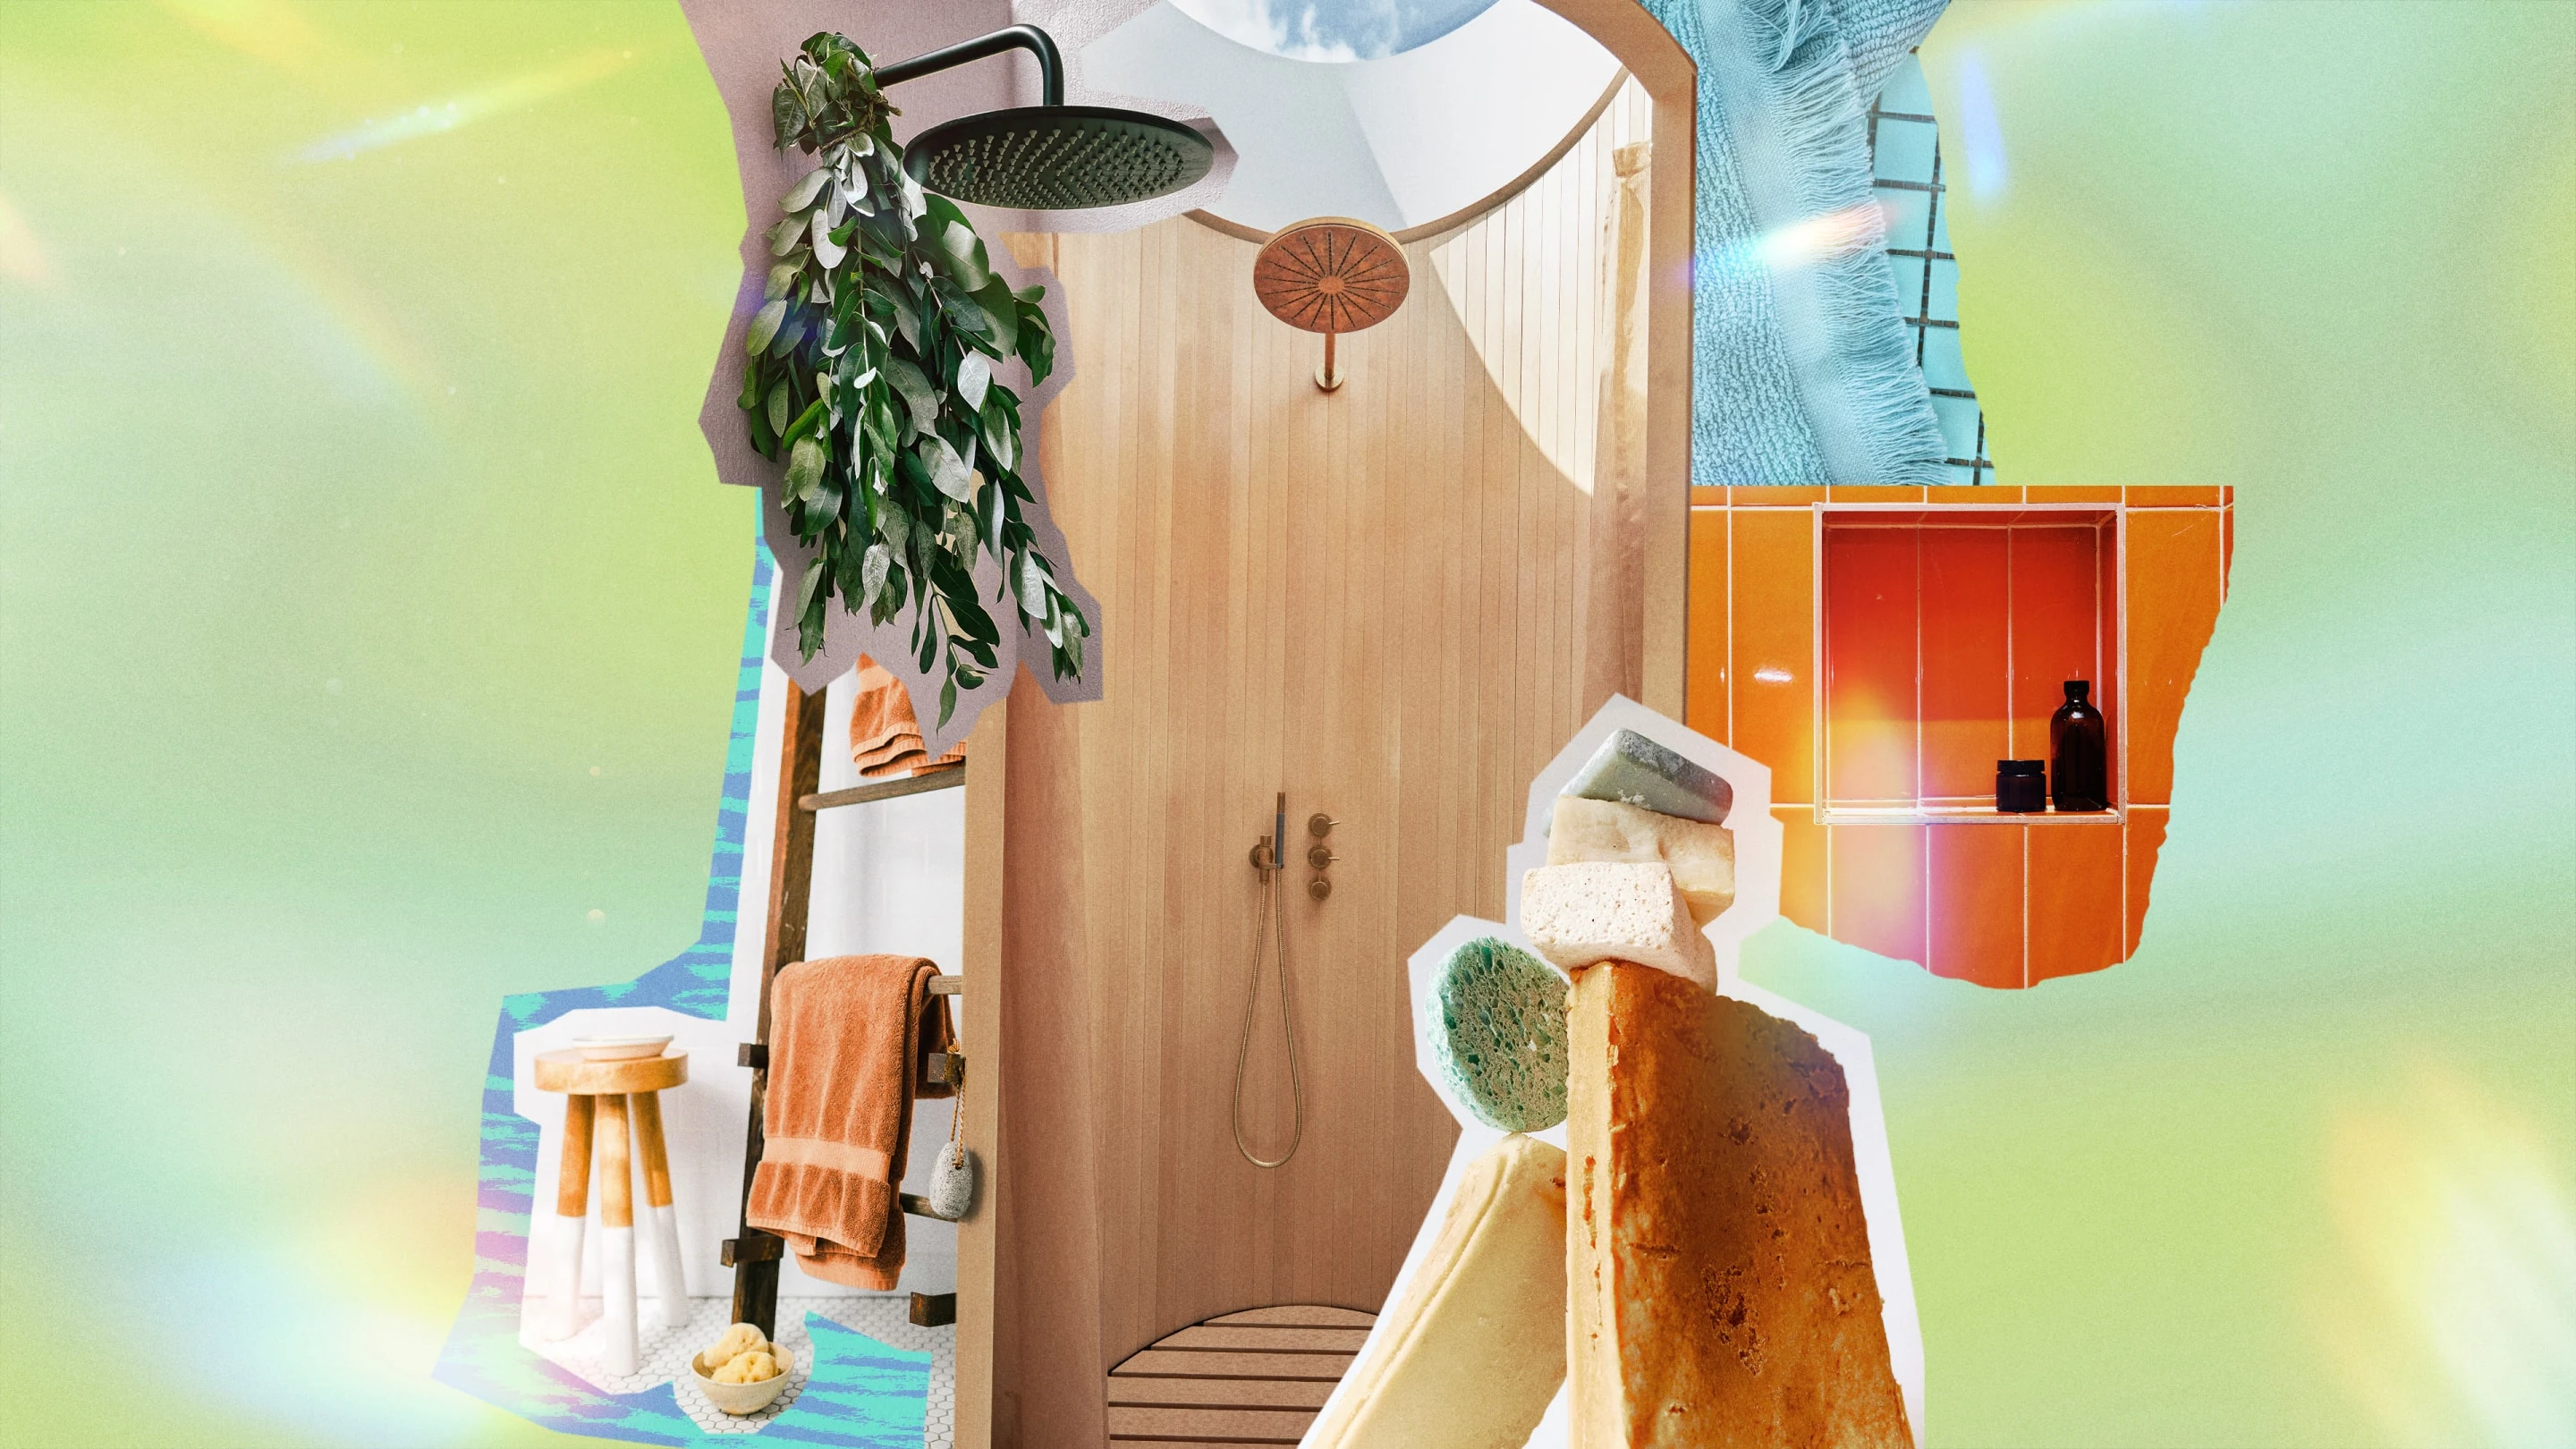 Colagem sobre banho, com folhas de eucalipto penduradas, várias esponjas, toalhas penduradas em uma escada e produtos para banho.